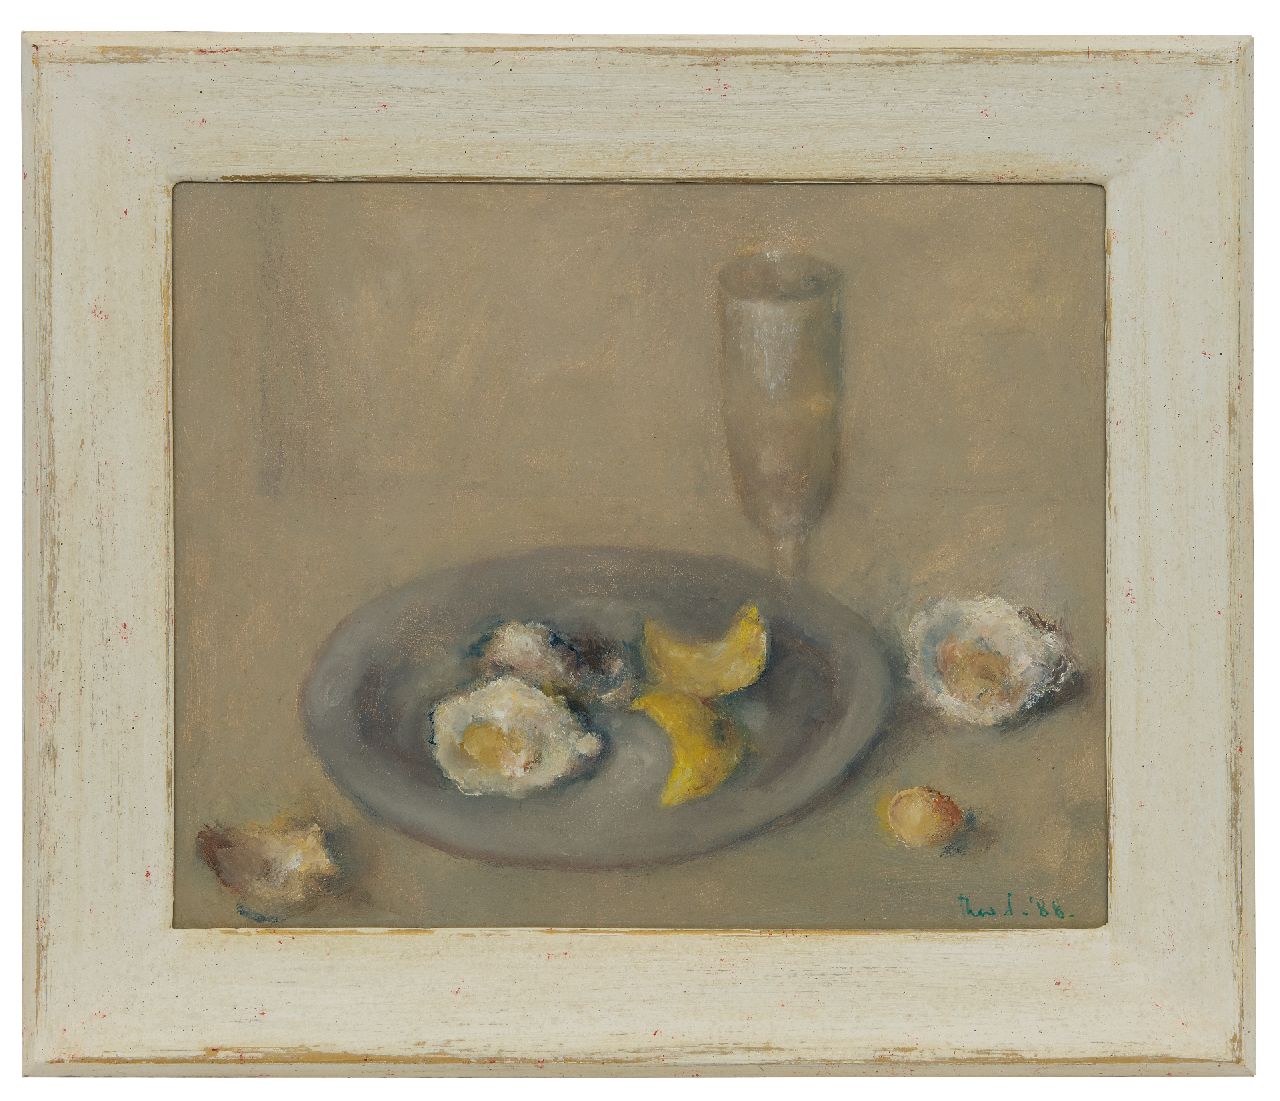 Swagemakers T.  | Theo Swagemakers, Stilleven met oesters en citroenschillen op een tinnen bord, olieverf op paneel 39,5 x 49,4 cm, gesigneerd rechtsonder en gedateerd '88